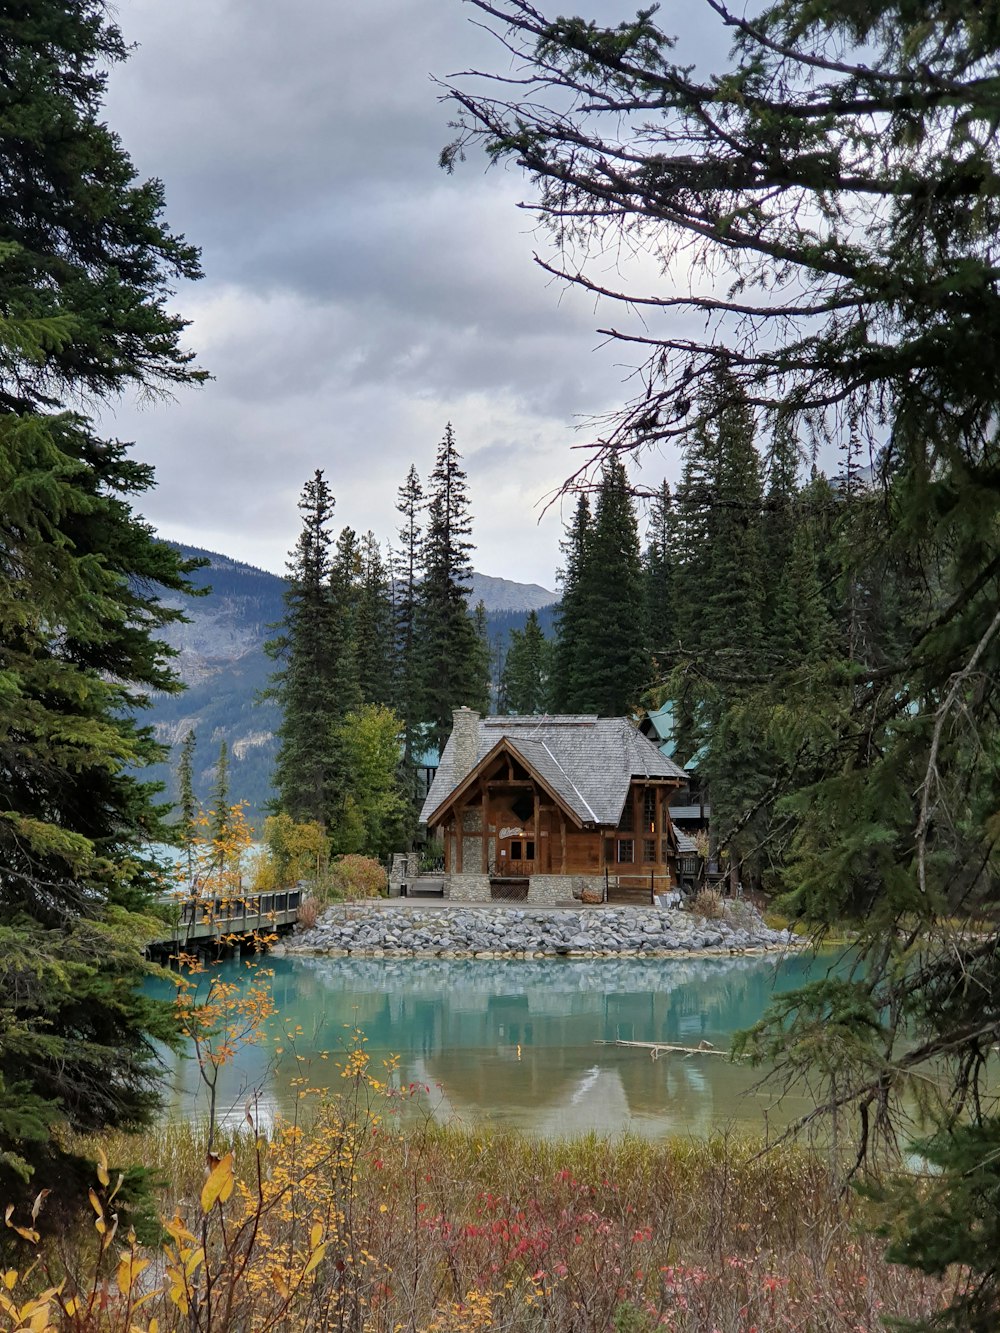 una capanna in mezzo a un lago circondata da alberi